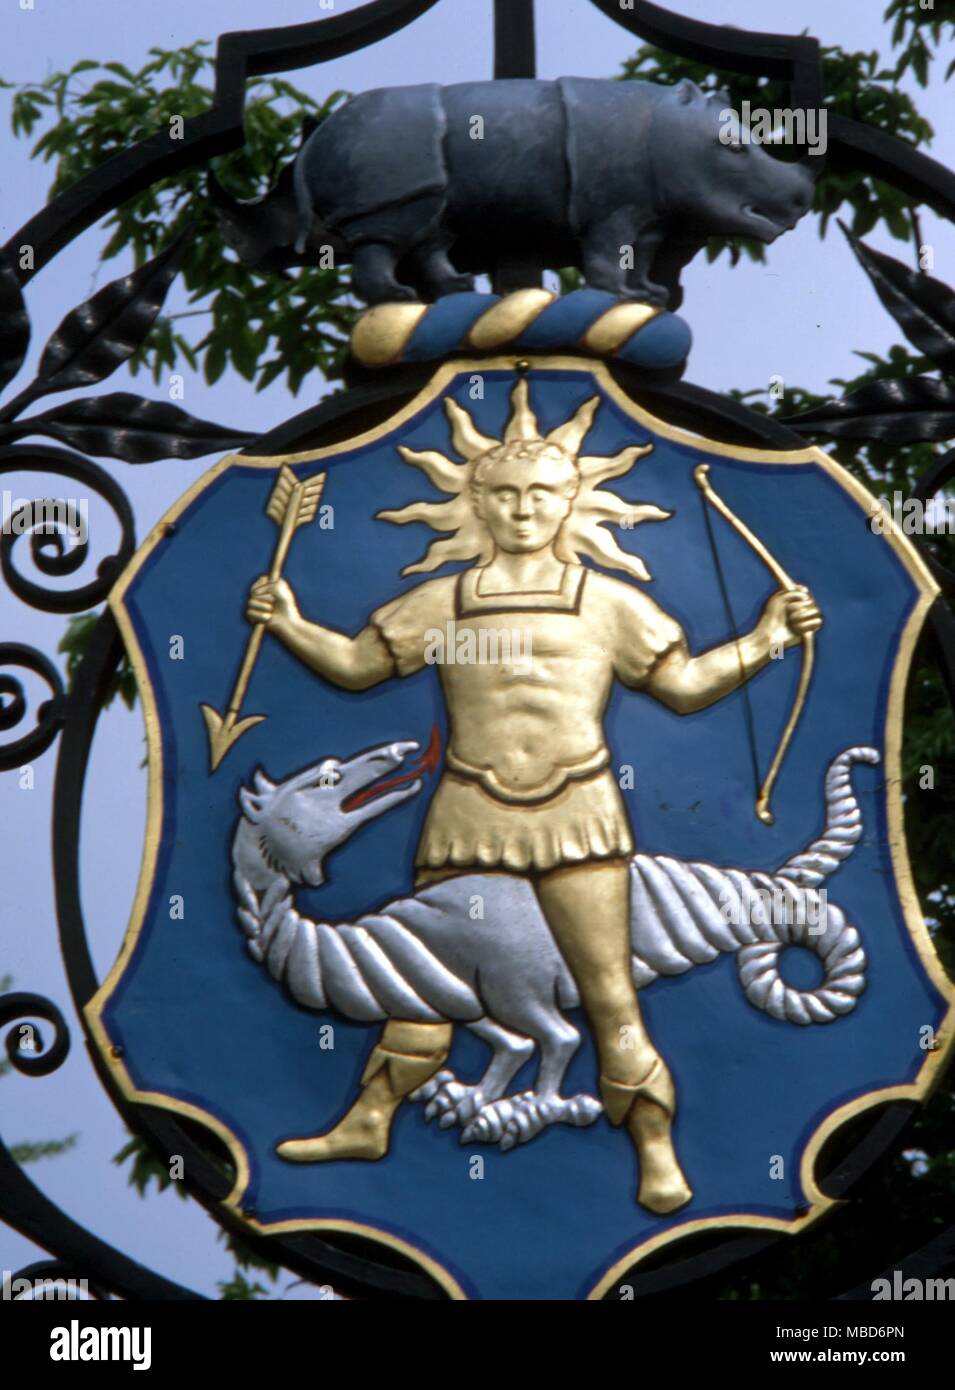 Drago - FISICA GIARDINO DRAGON - il dio-sole con il Lunar dragon - dispositivo araldico sul cancello principale del giardino di fisica in Chelsea. Foto Stock